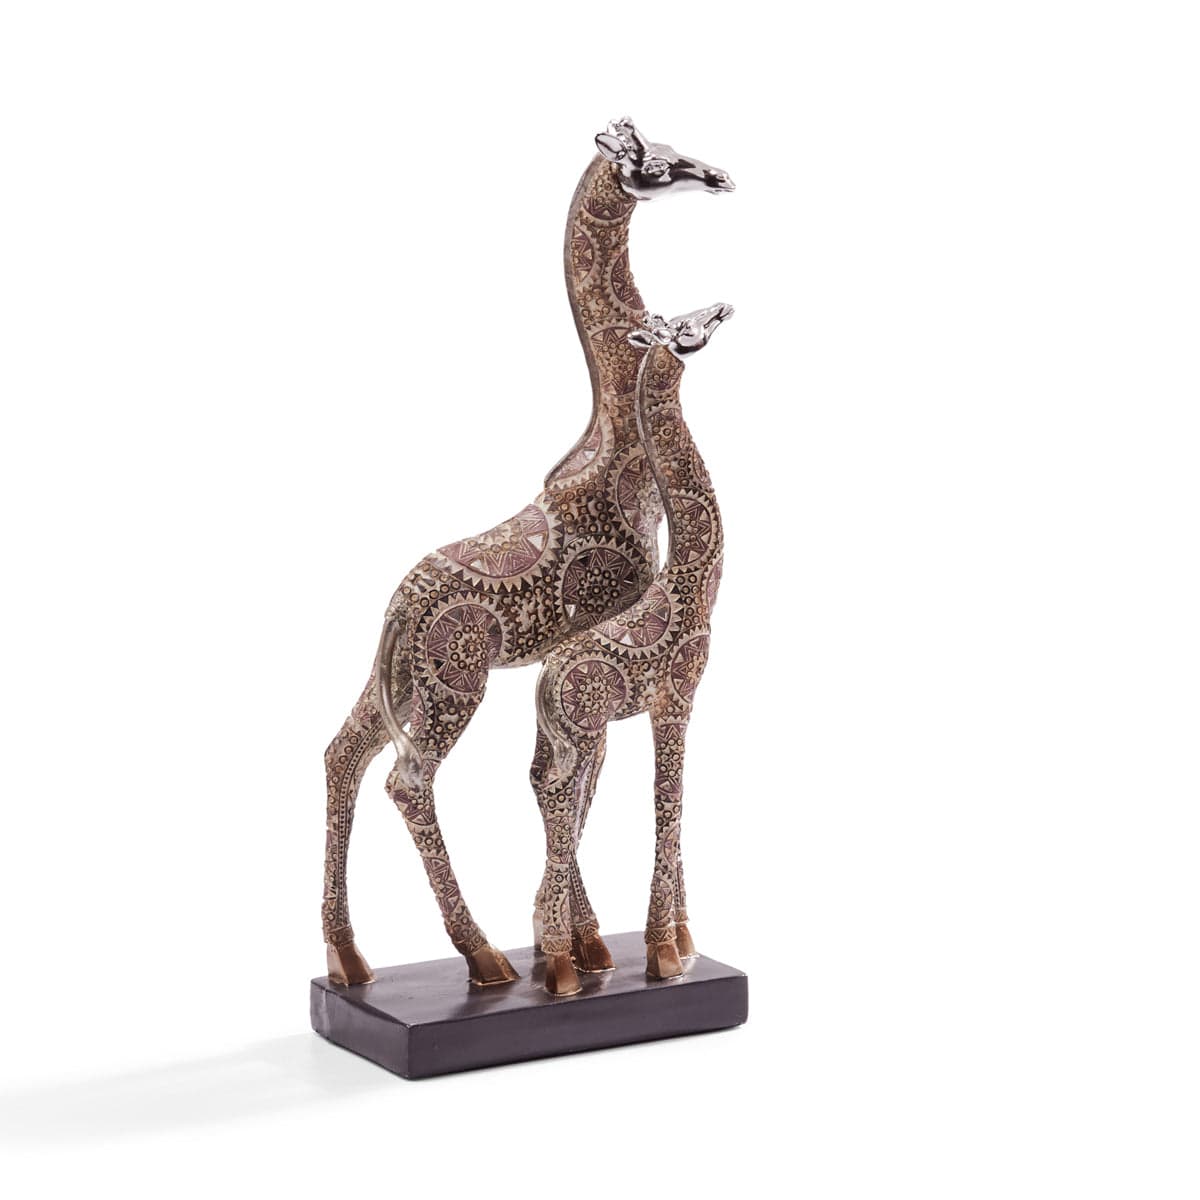 Red Butler Showpieces Printed Giraffe Duo LPG06A1 Giraffe Duo Showpiece – Resin Masterpiece for Elegant Home Decor | Animal figurine showpieces Redbutler